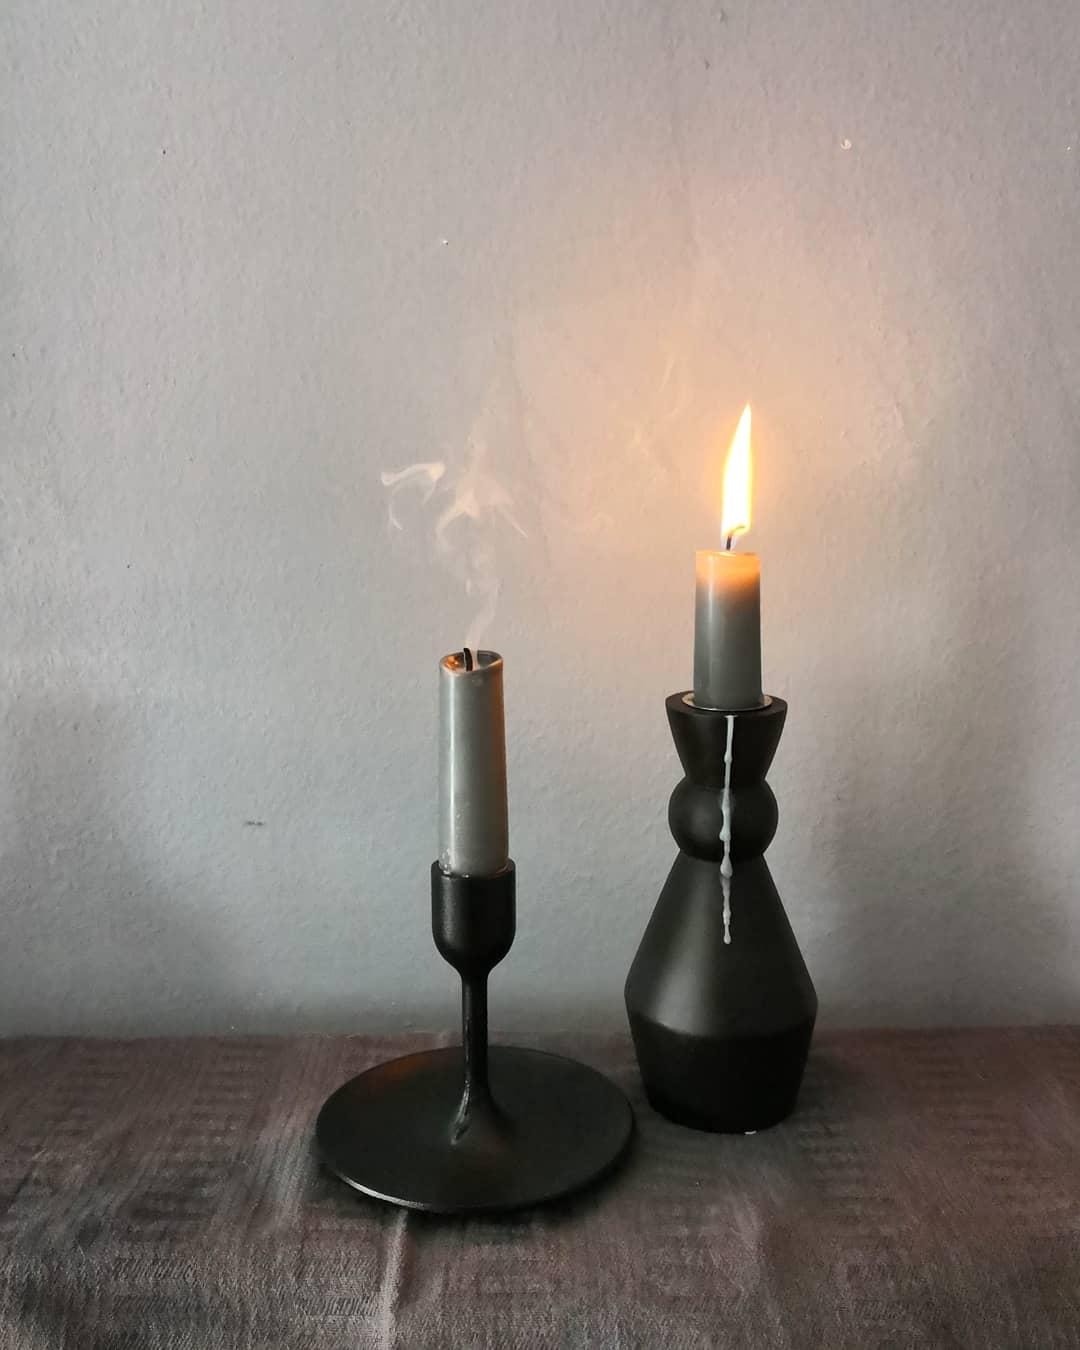 #aquietstyle #simplicity #slowliving #theartofslowliving #kerzen #candles 